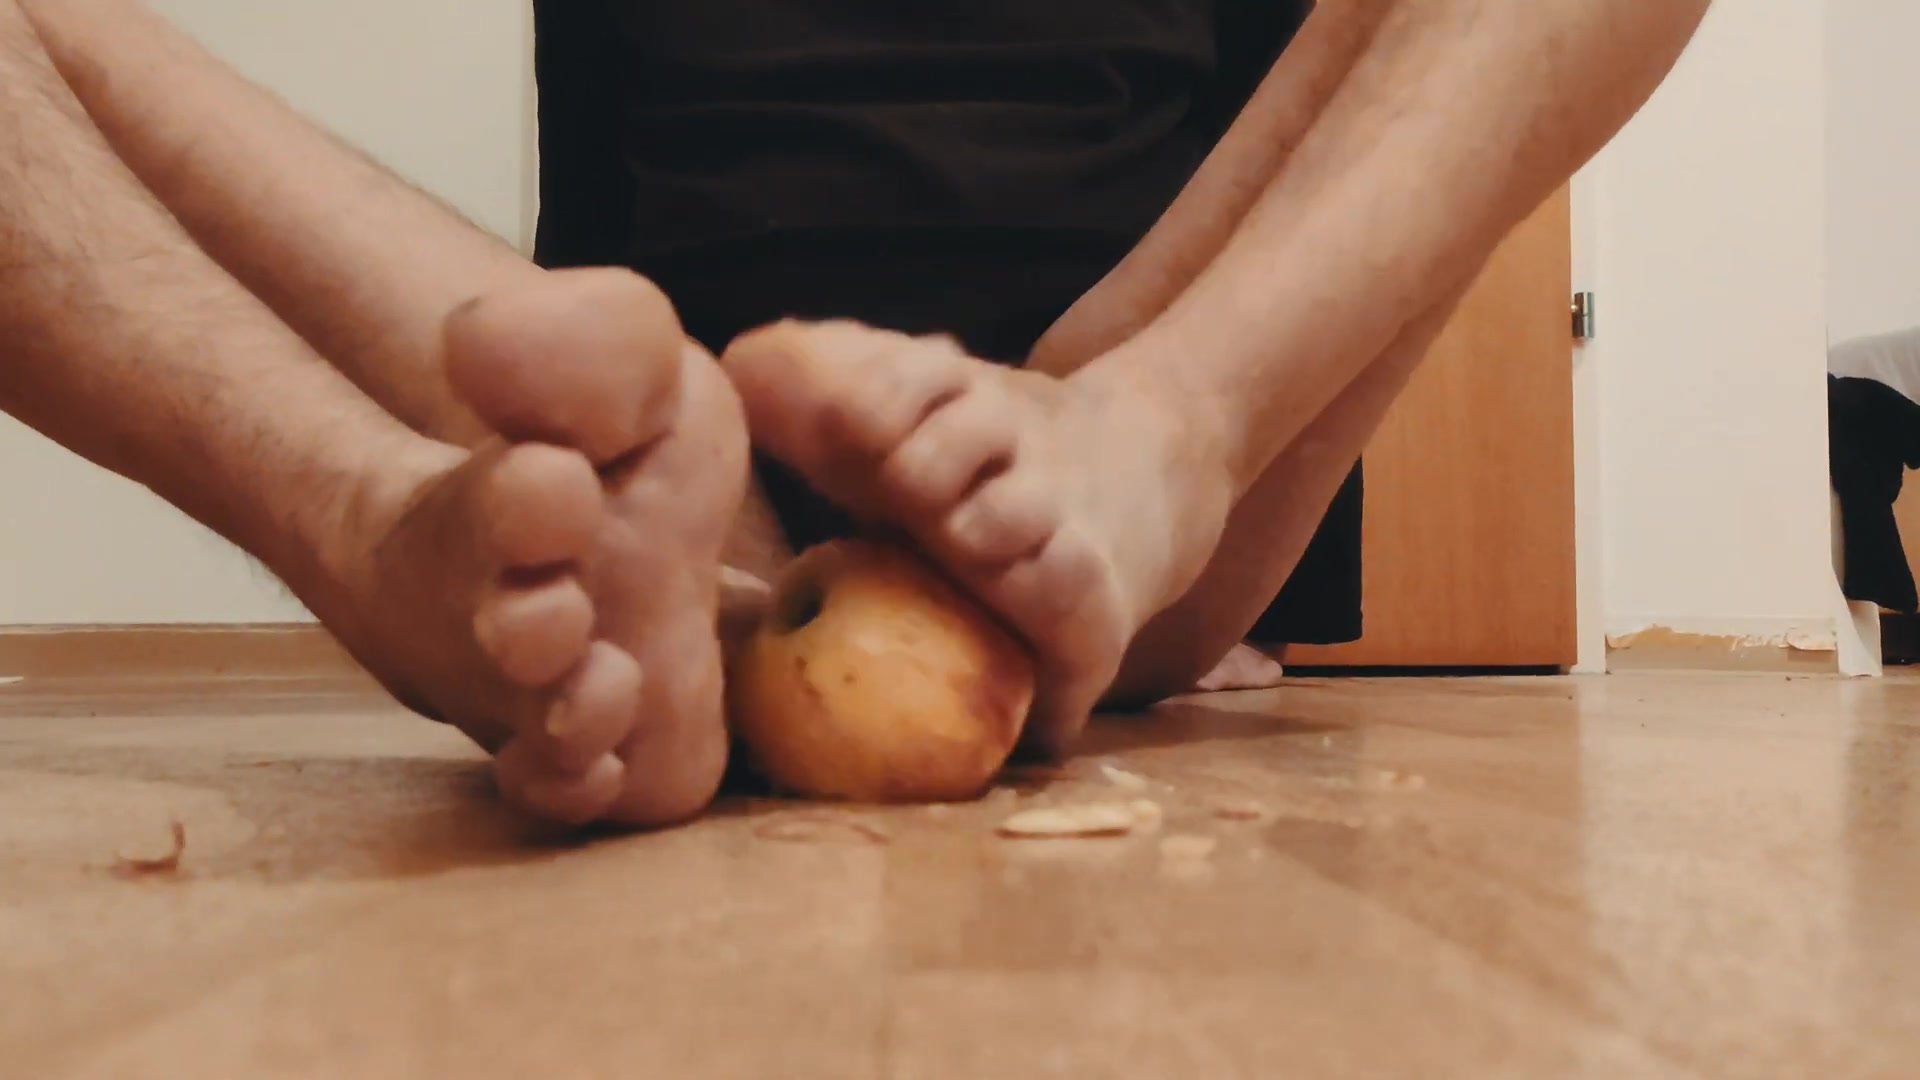 Guys Smelly Feet Crush An Apple